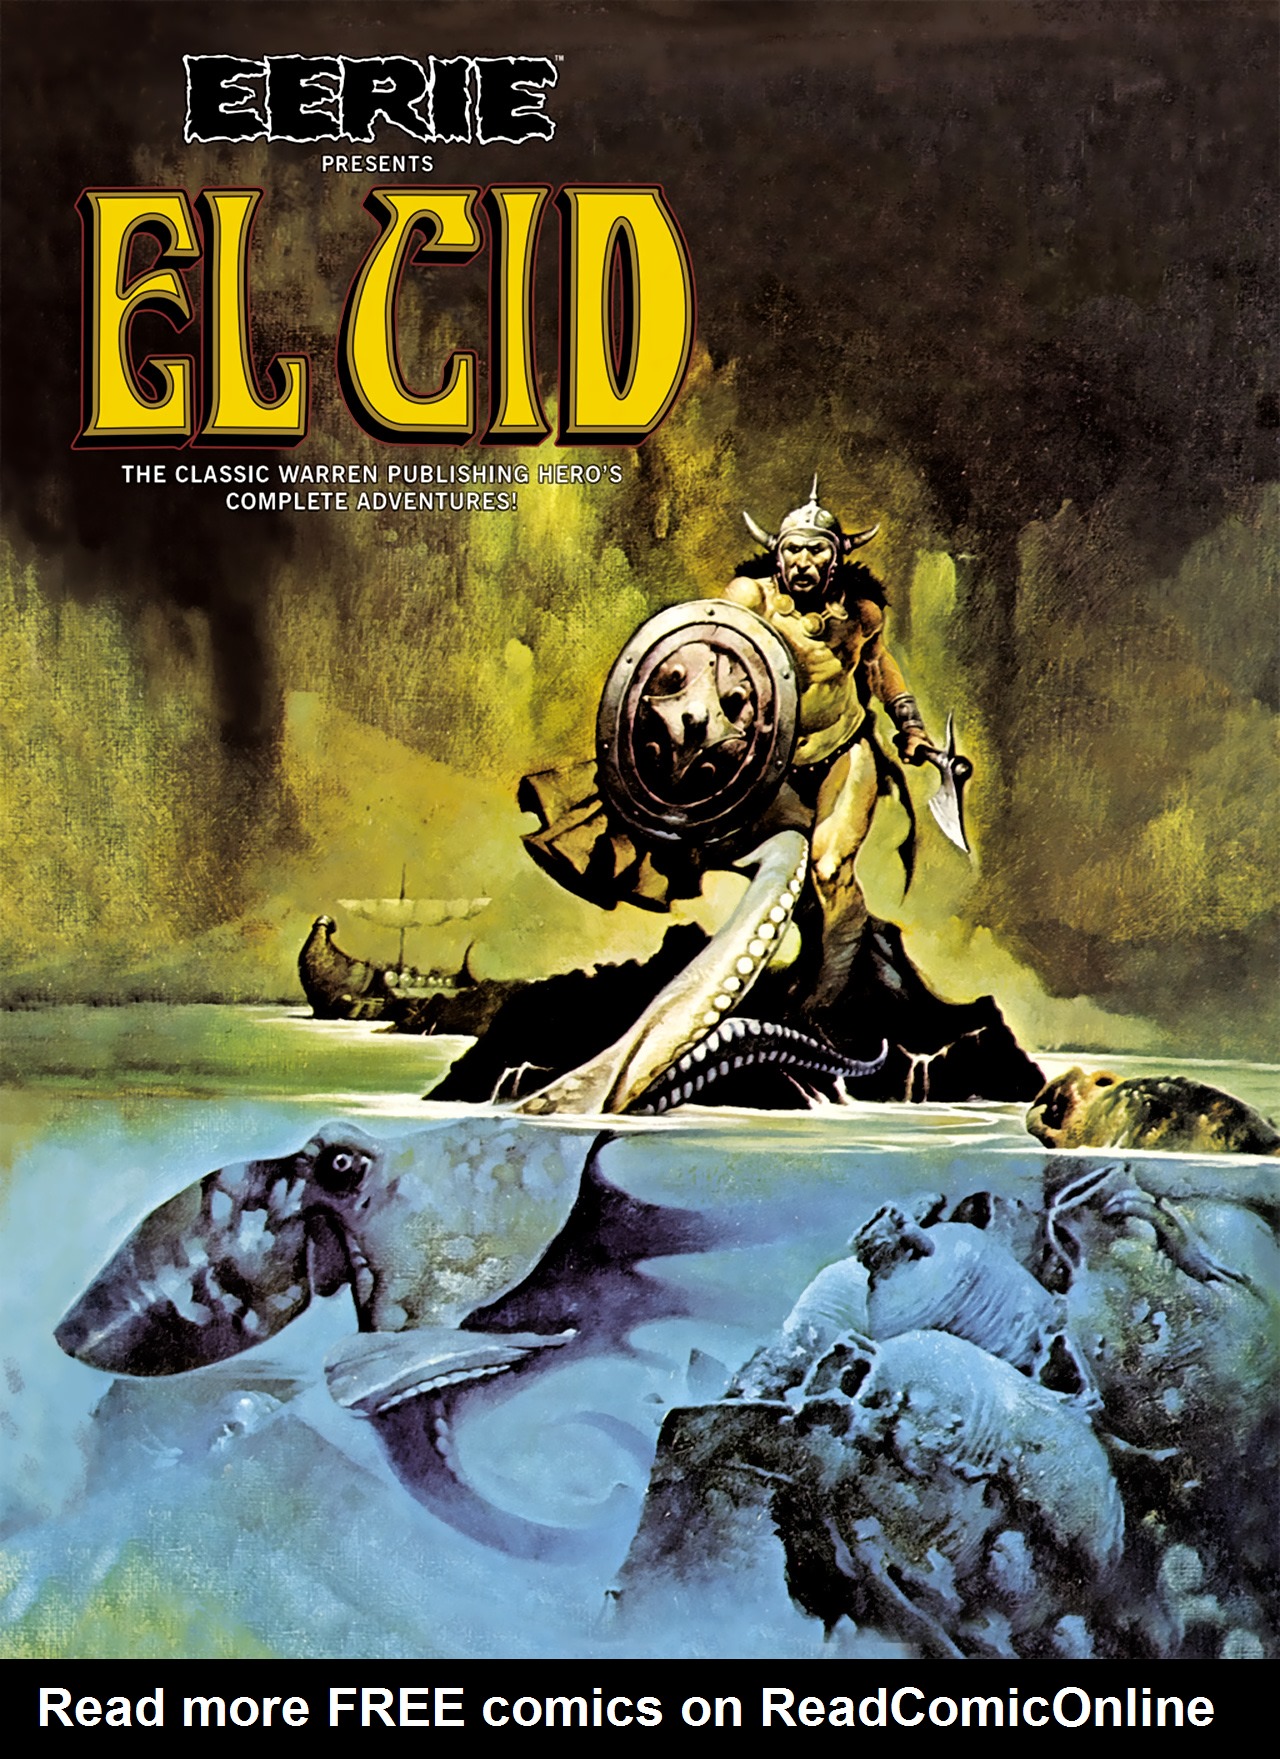 Read online Eerie Presents El Cid comic -  Issue # TPB - 1